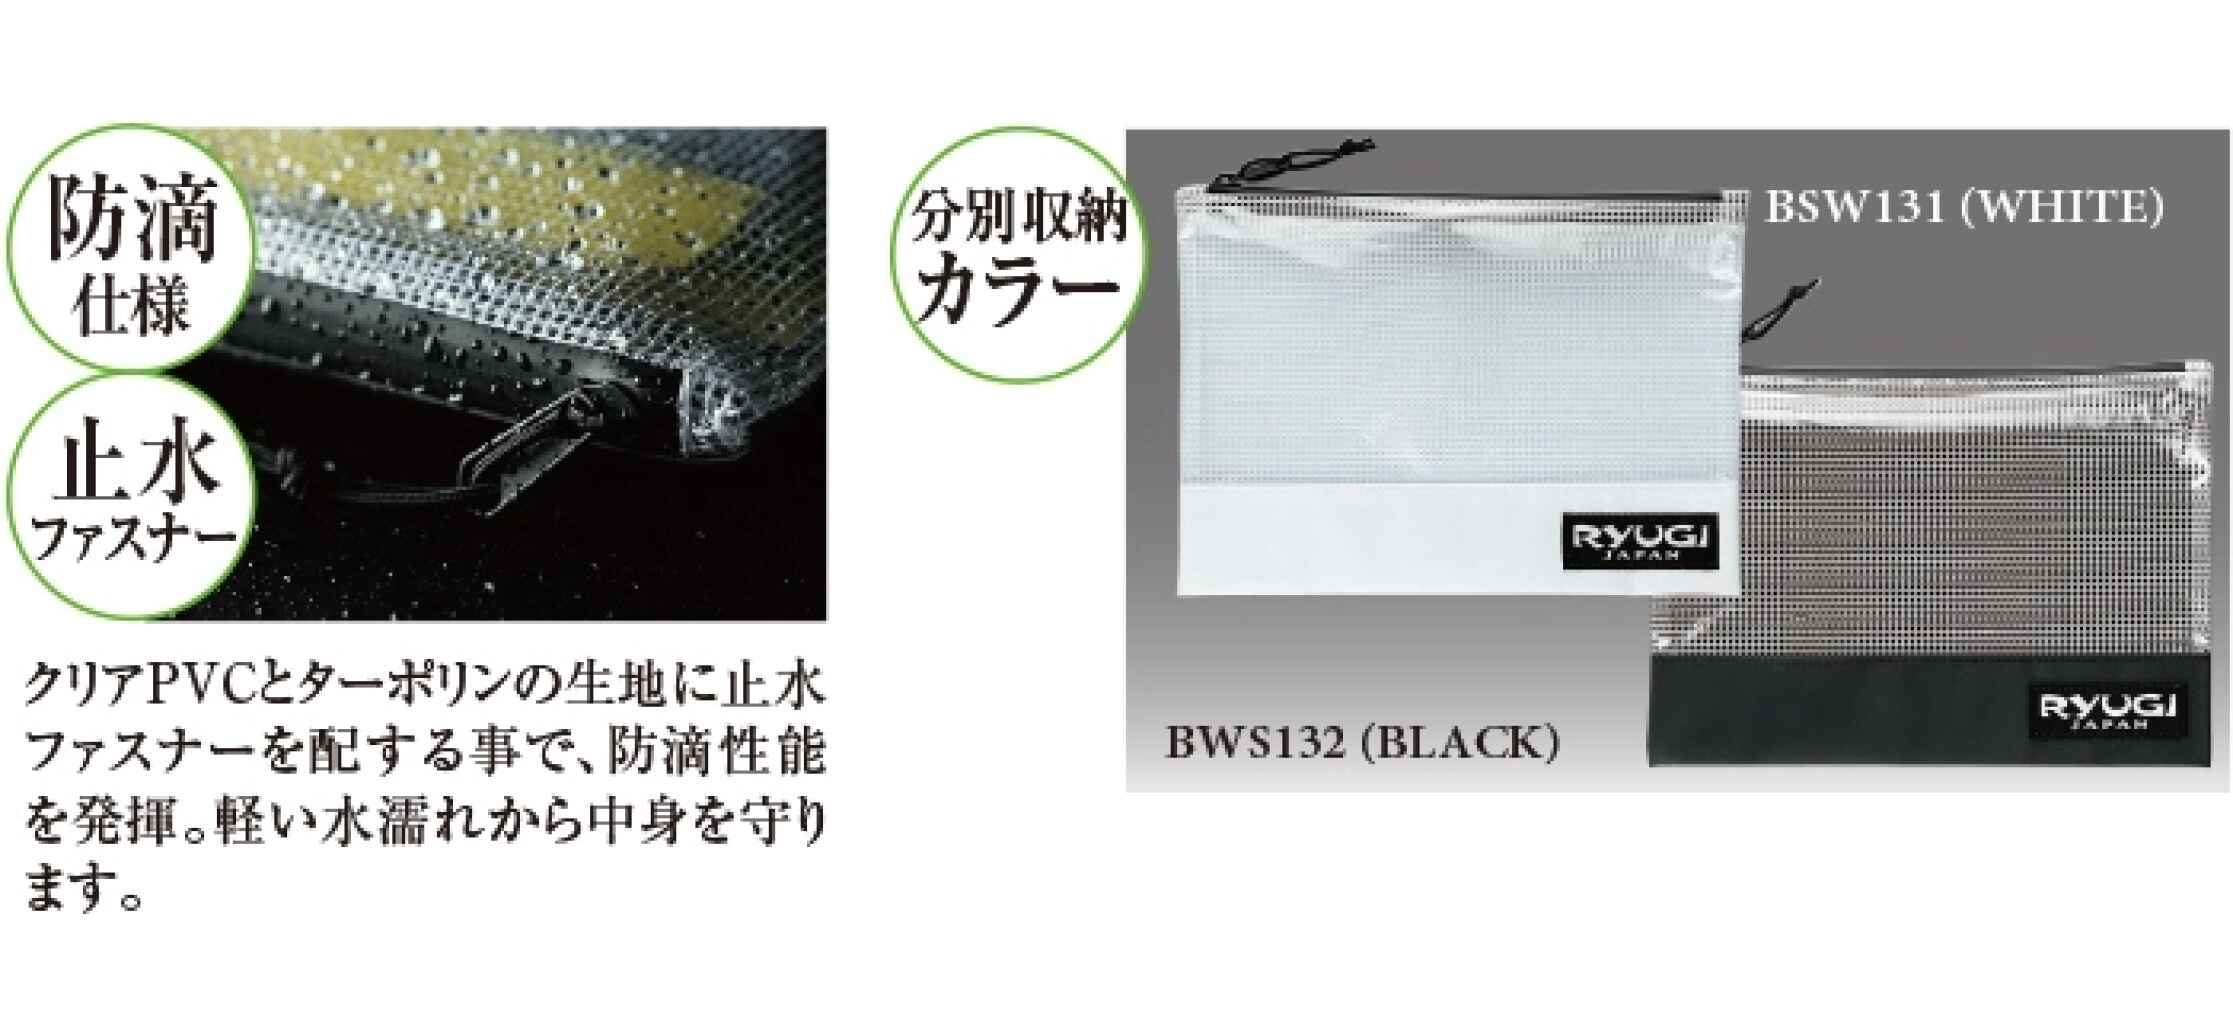 Ryugi Worm Stocker M Black